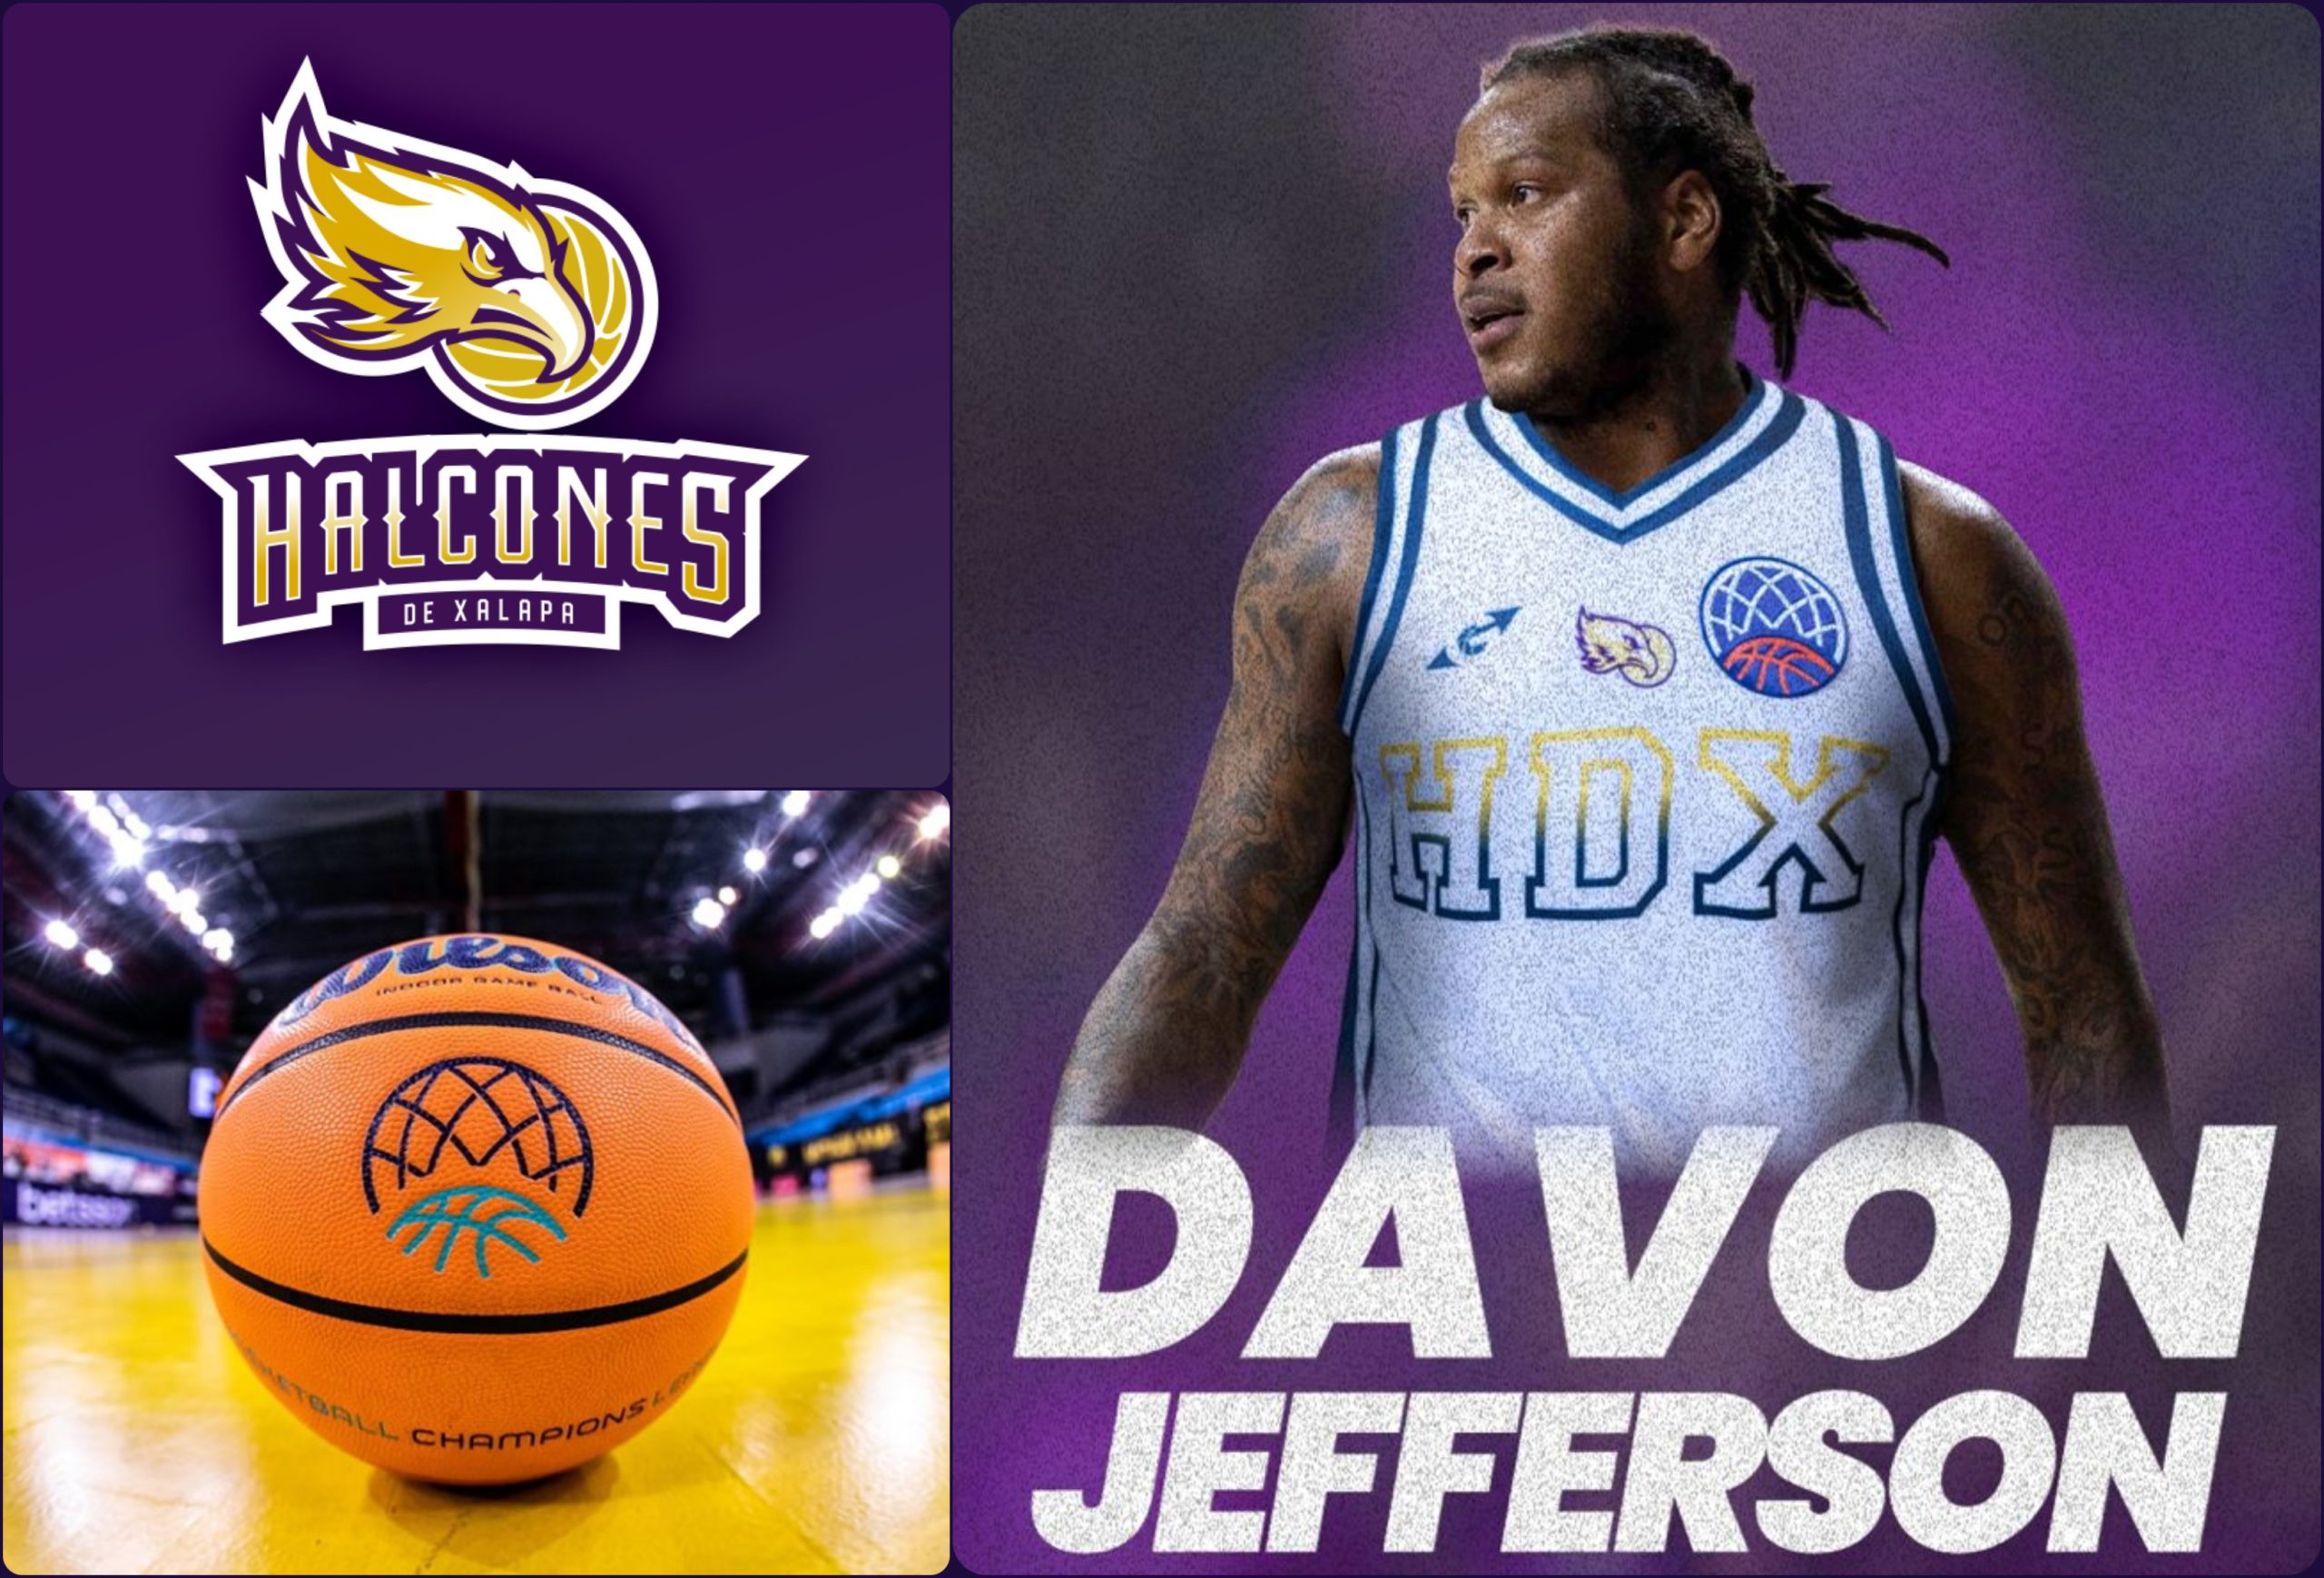 Davon Jefferson es nuevo jugador de Halcones de Xalapa